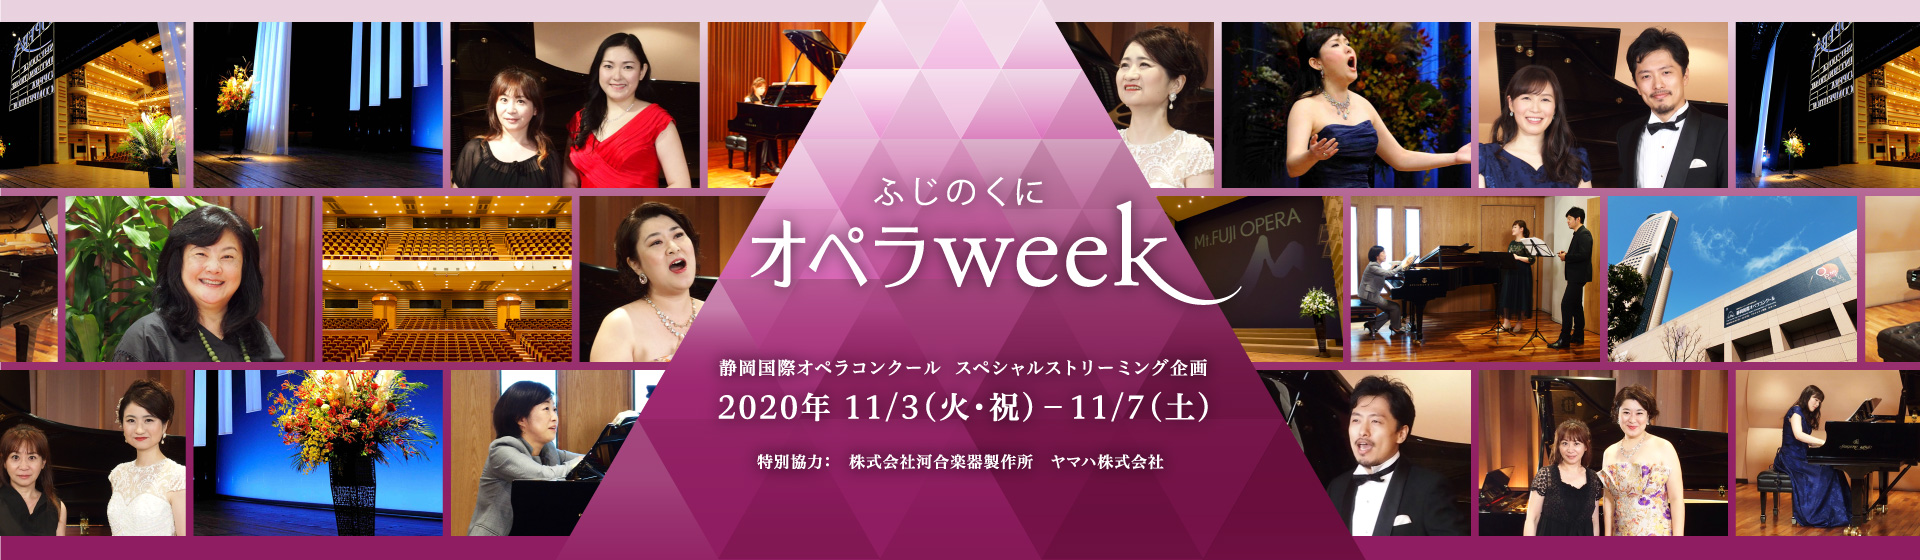 ふじのくにオペラweek 静岡国際オペラコンクール  スペシャルストリーミング企画